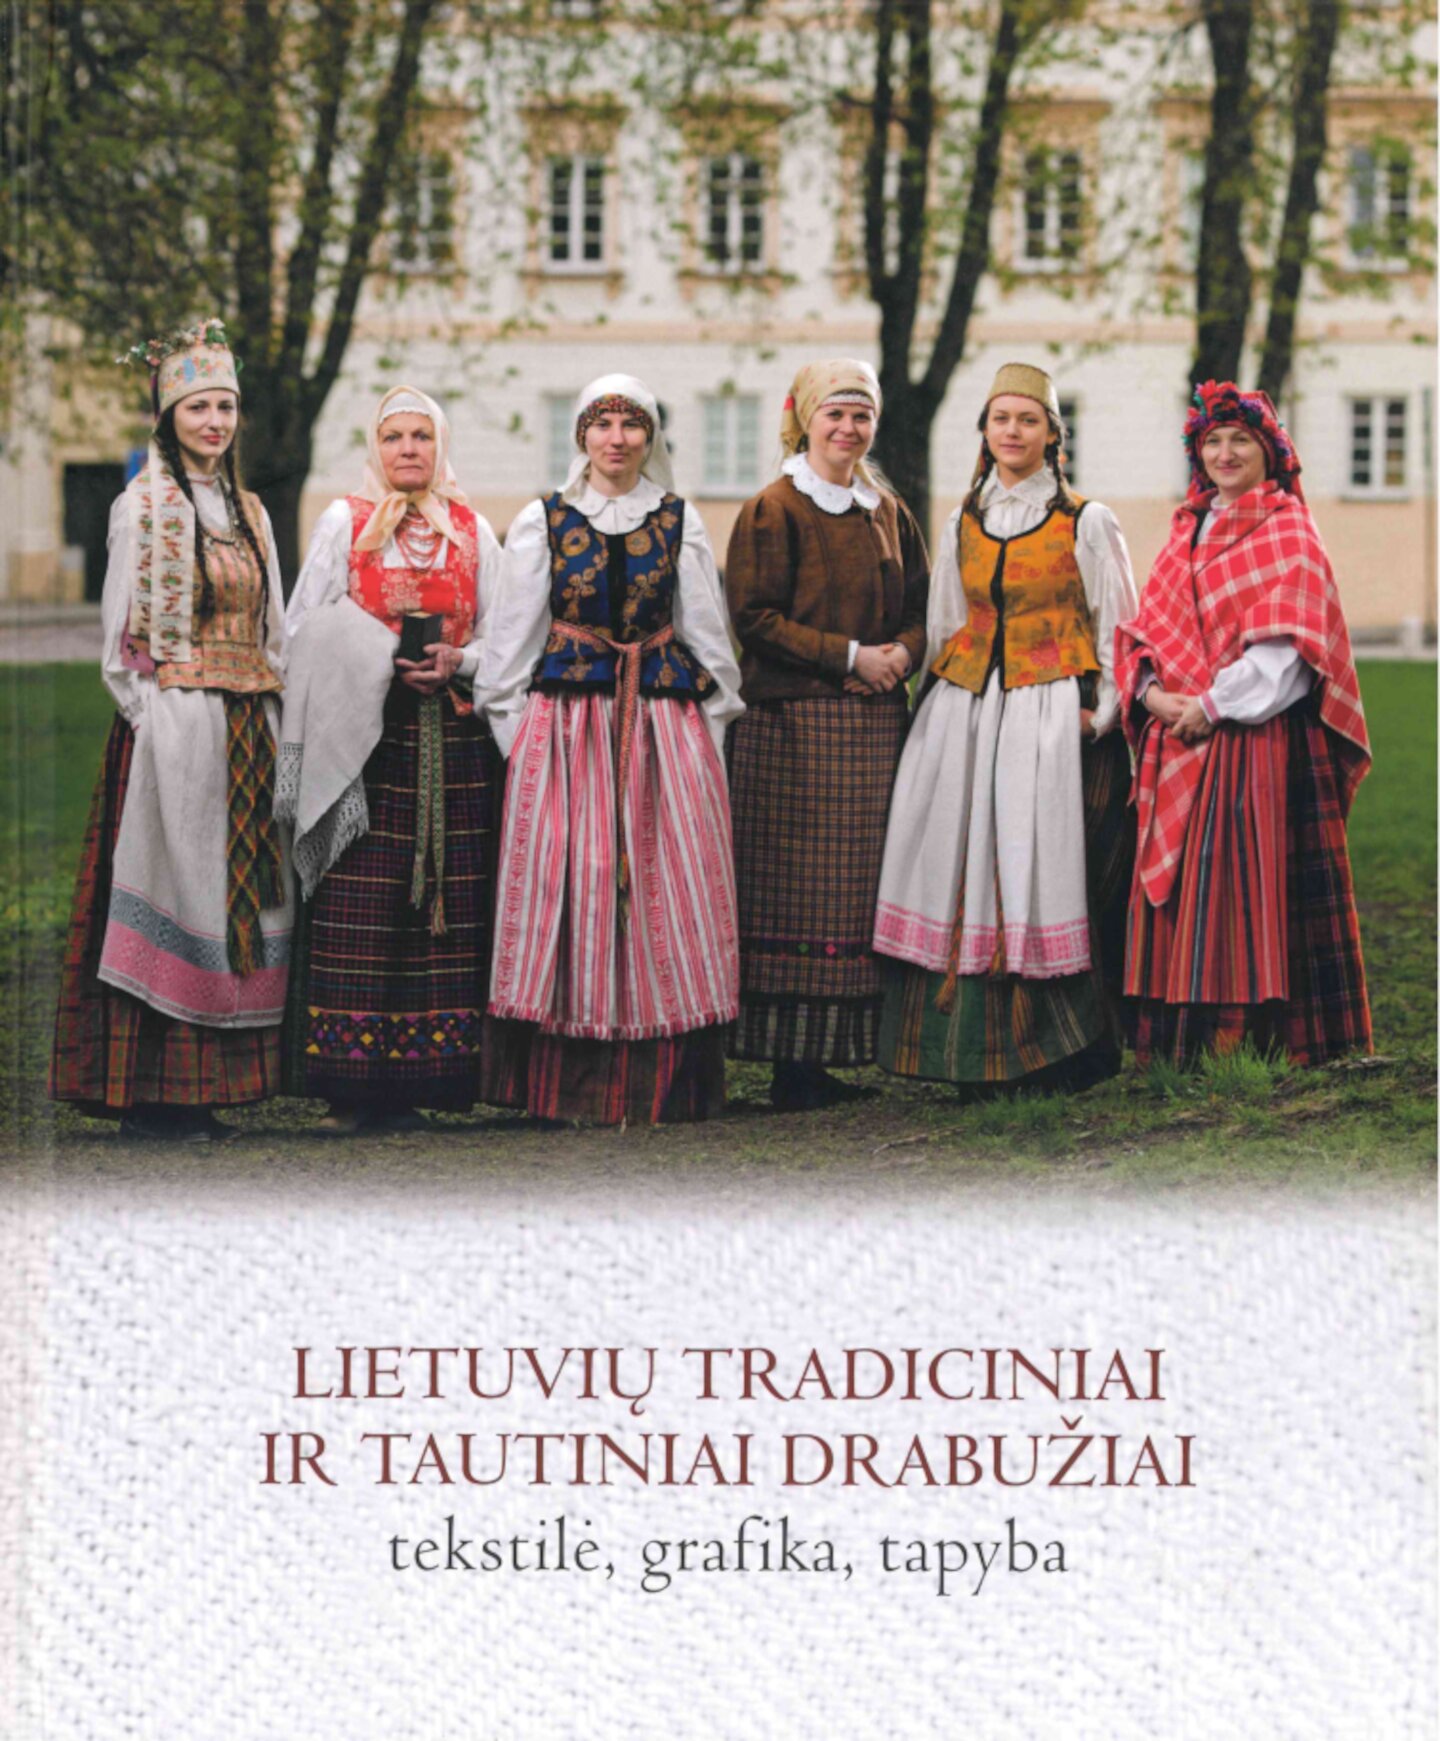 Lietuviu-tradiciniai-ir-tautiniai-drabuziai